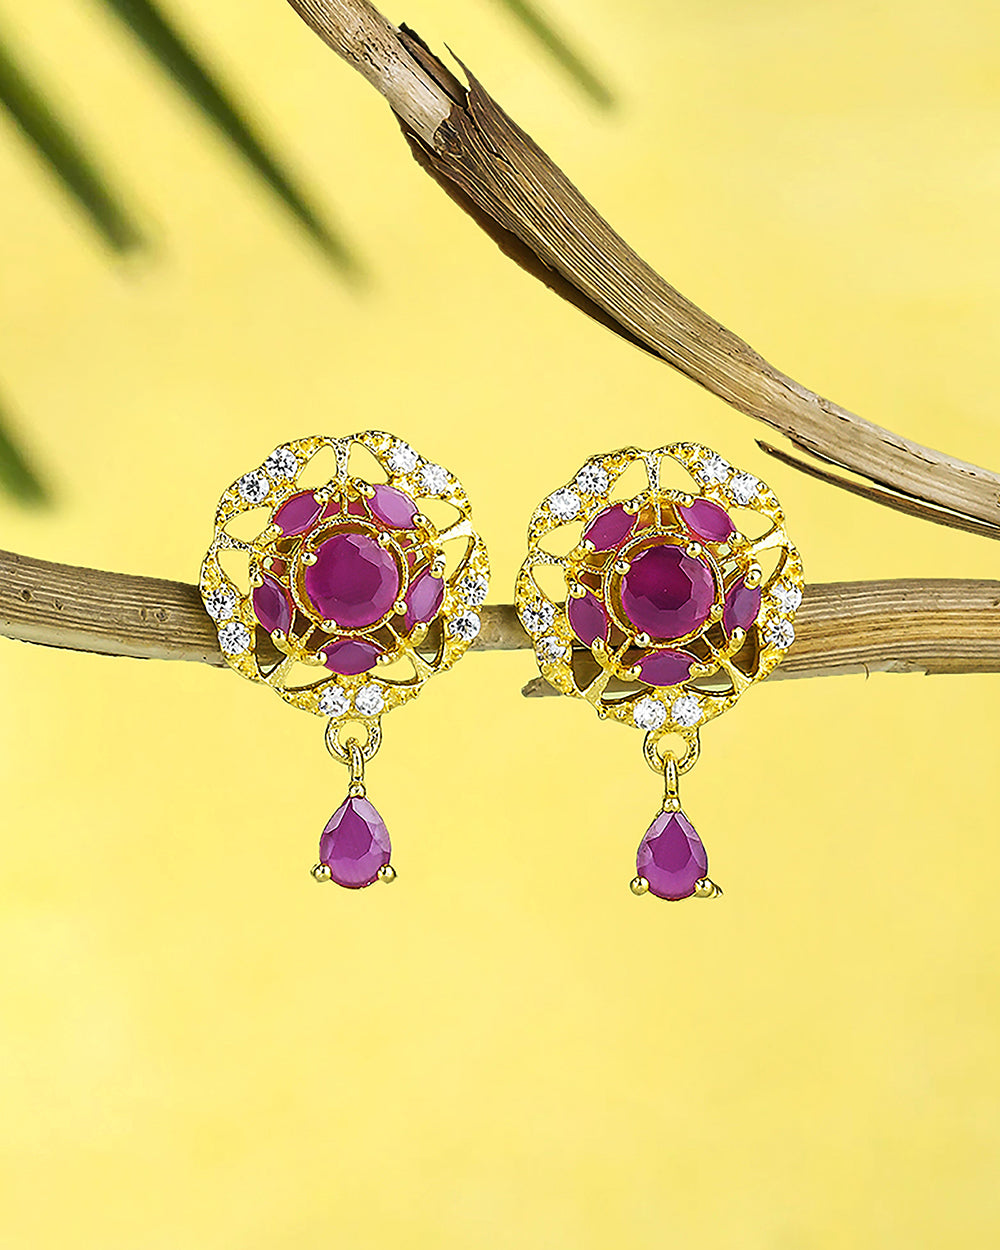 Women's Casual Pink Cz Gems Stud Earrings - Voylla